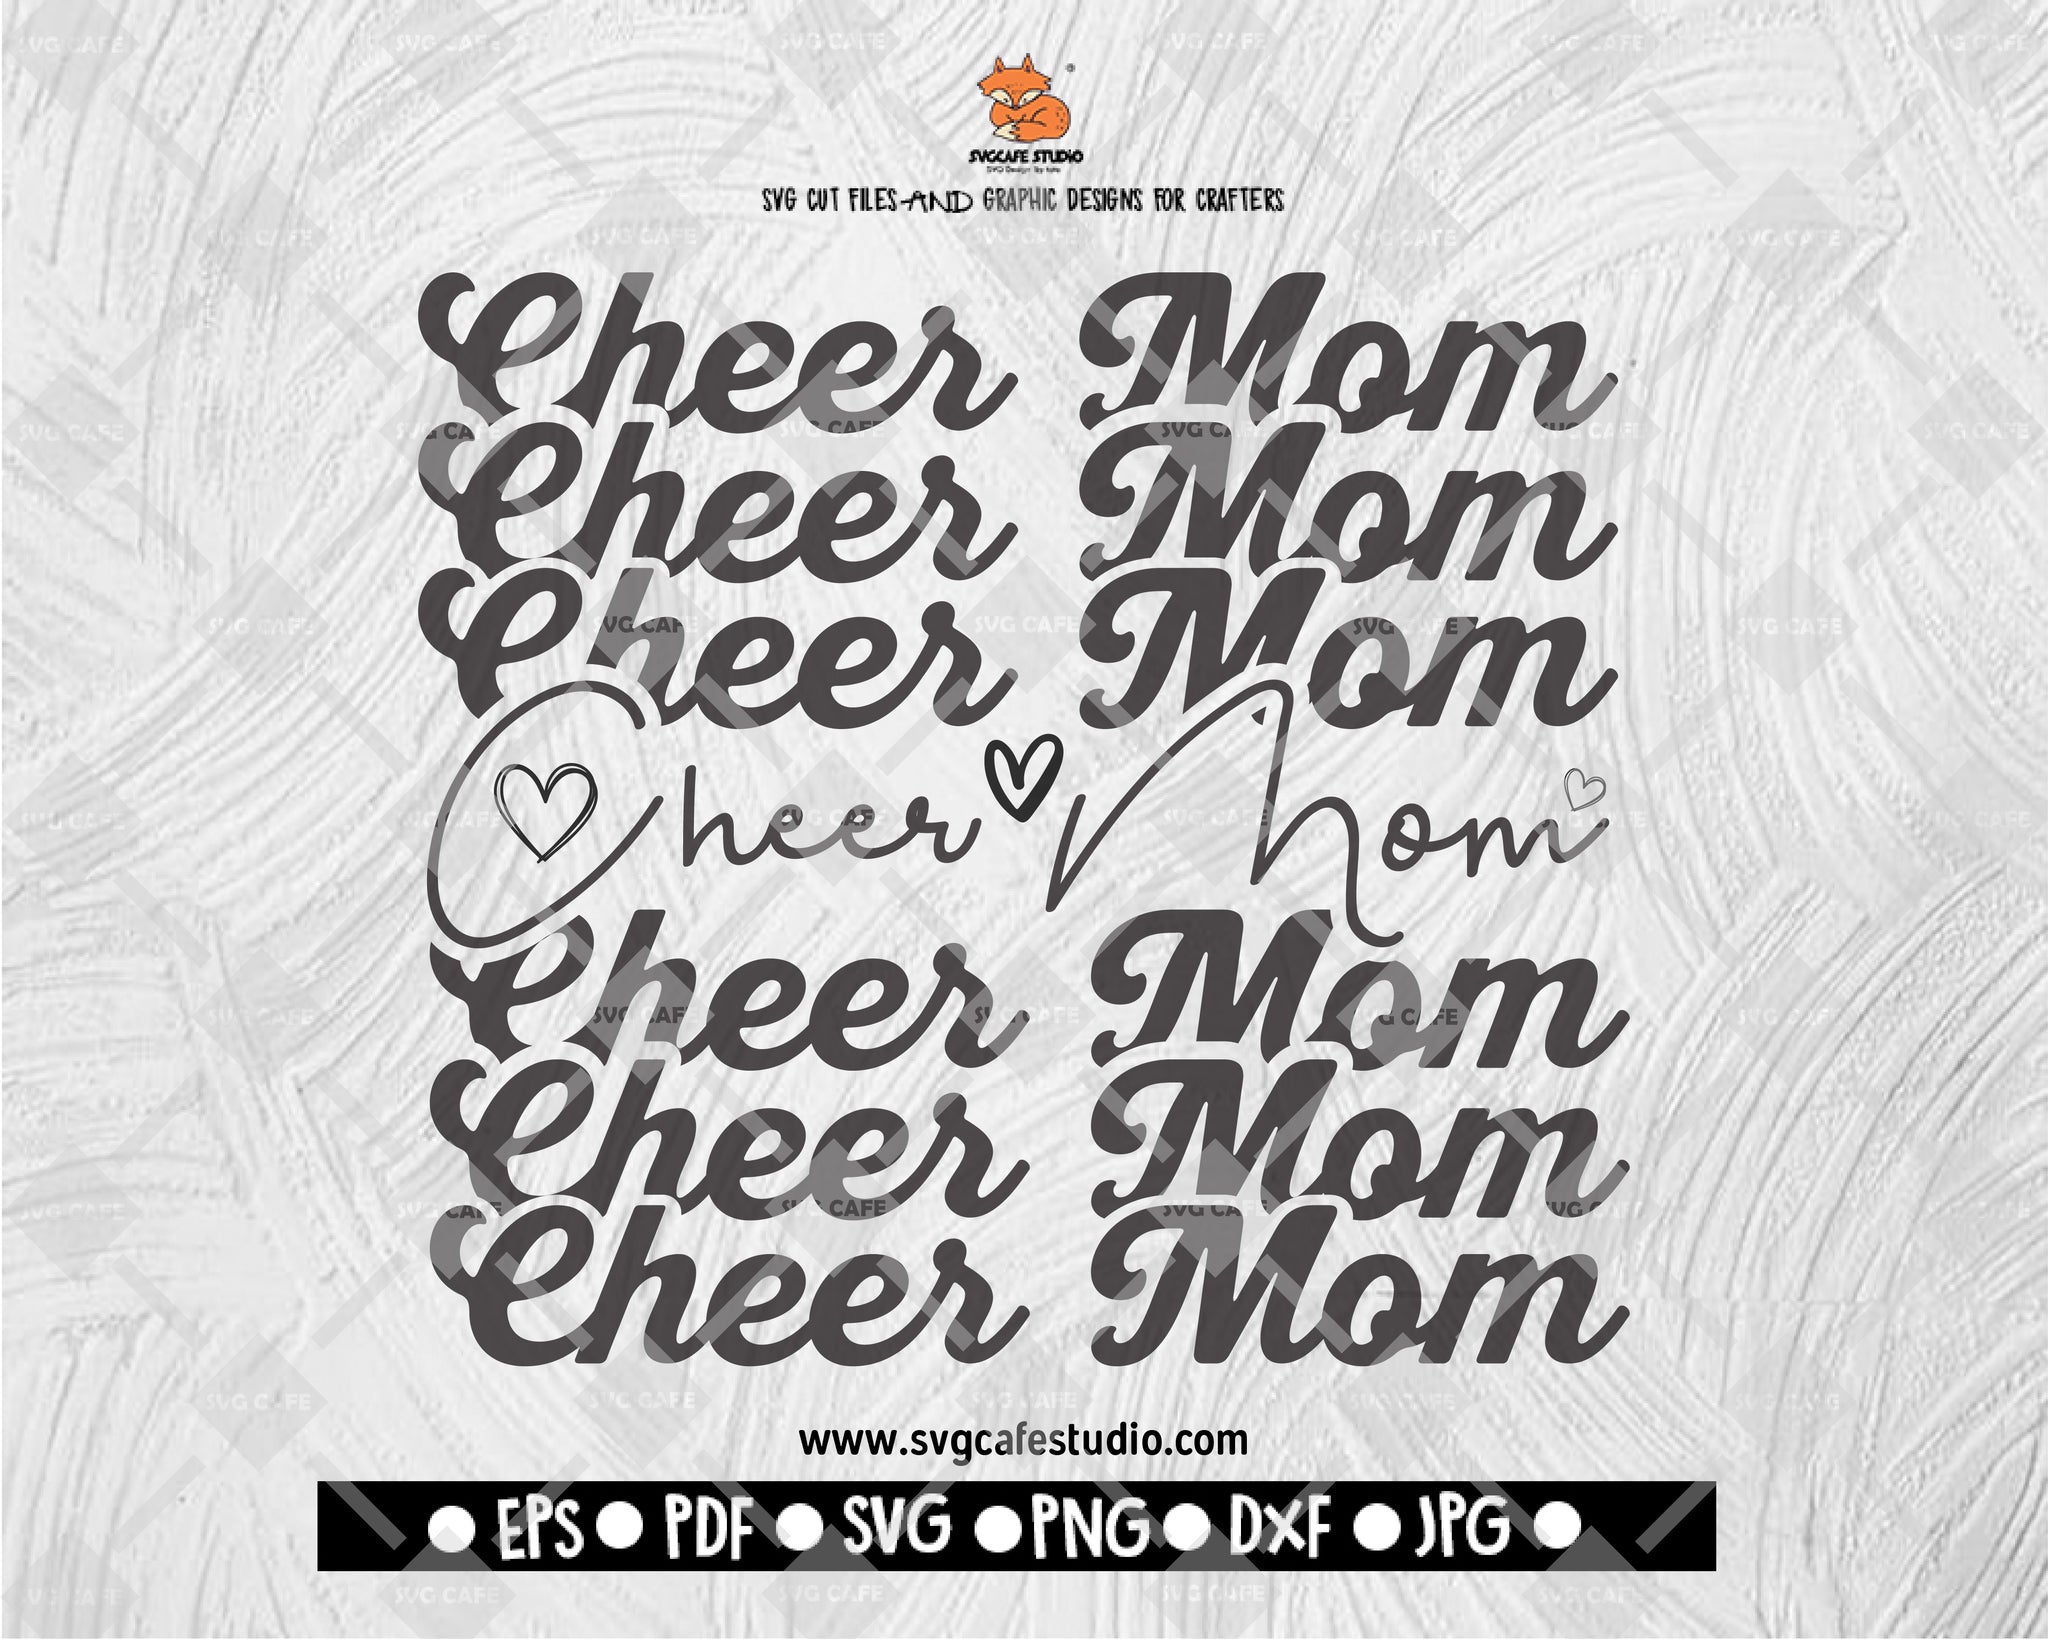 Cheer Mom Svg, Cheerleader Svg, Team Spirit Svg, Cheer mom Shirt Svg, Cheer life Svg, Gift for mom Svg, Png Svg digital files for cricut